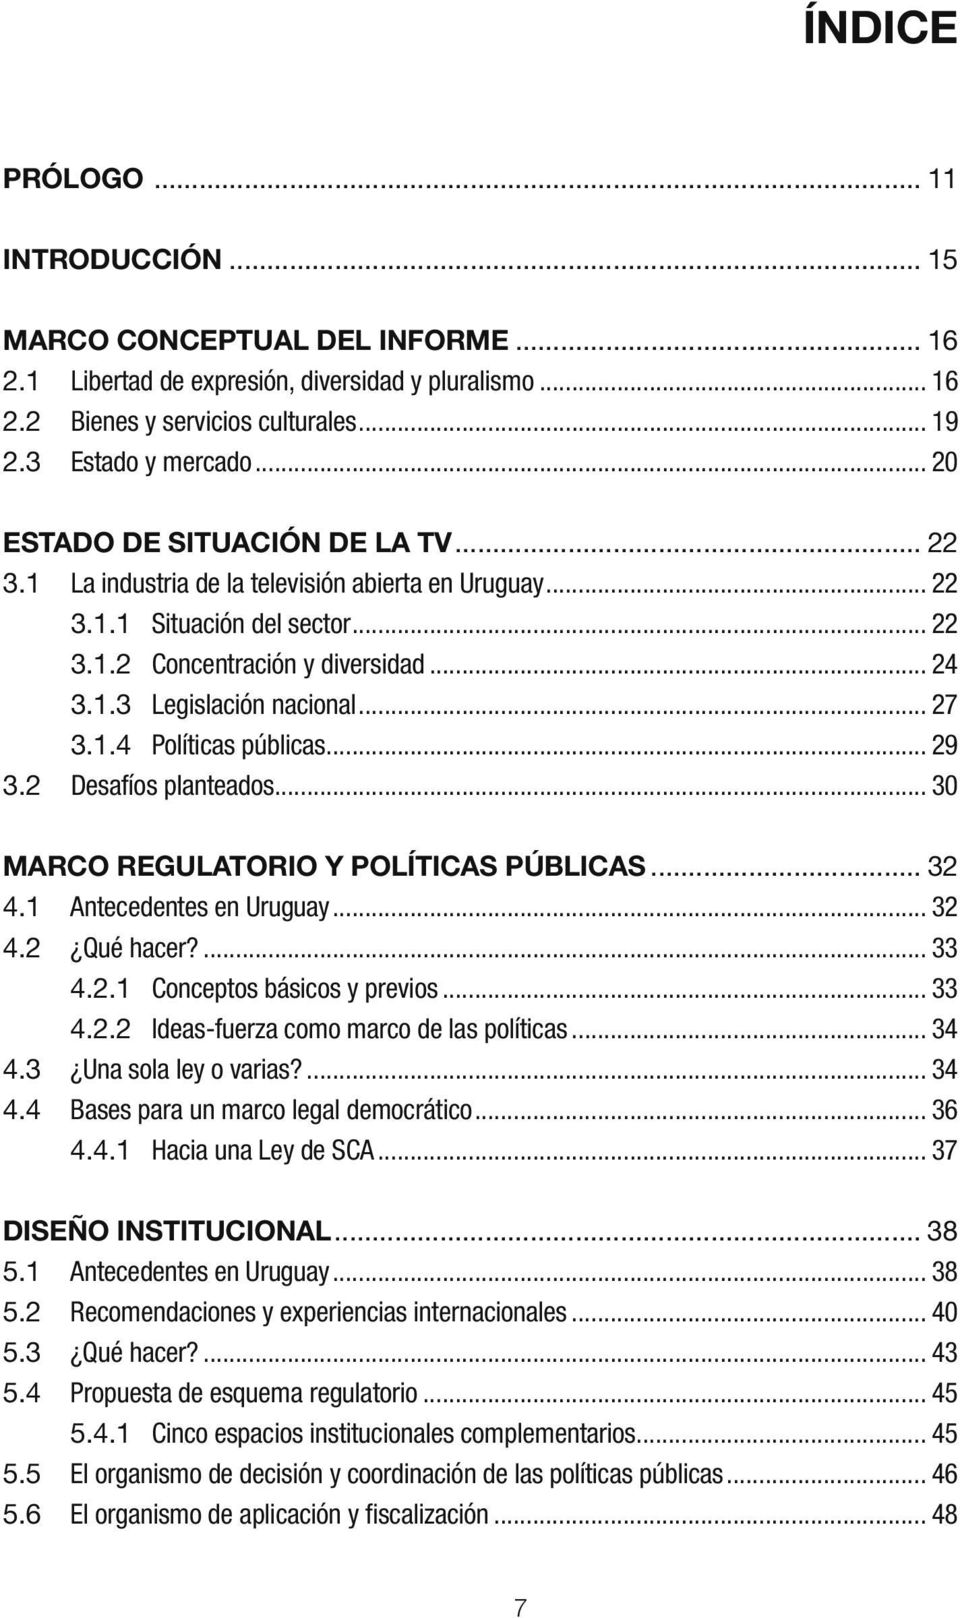 .. 27 3.1.4 Políticas públicas... 29 3.2 Desafíos planteados... 30 MARCO REGULATORIO Y POLÍTICAS PÚBLICAS... 32 4.1 Antecedentes en Uruguay... 32 4.2 Qué hacer?... 33 4.2.1 Conceptos básicos y previos.